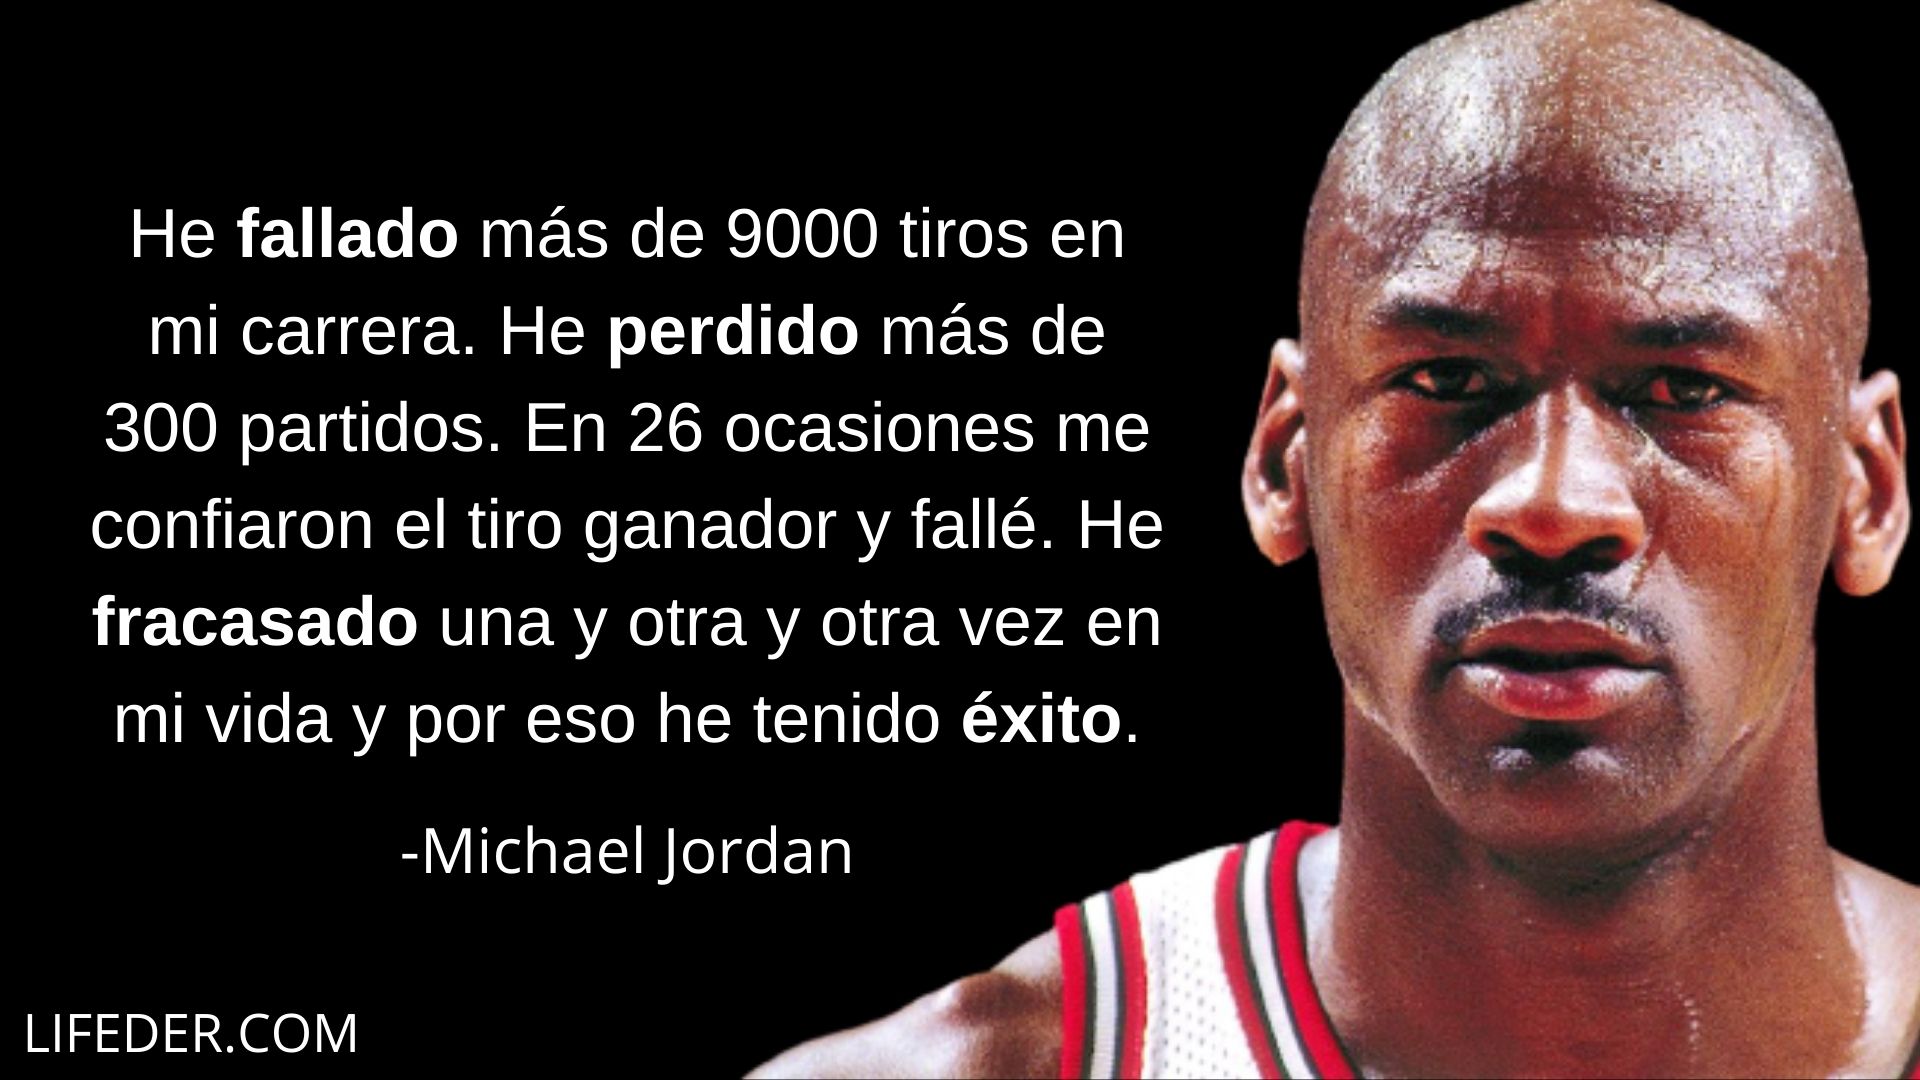 sal Fontanero Oferta de trabajo 100+ Frases de Michael Jordan sobre el Éxito y el Baloncesto